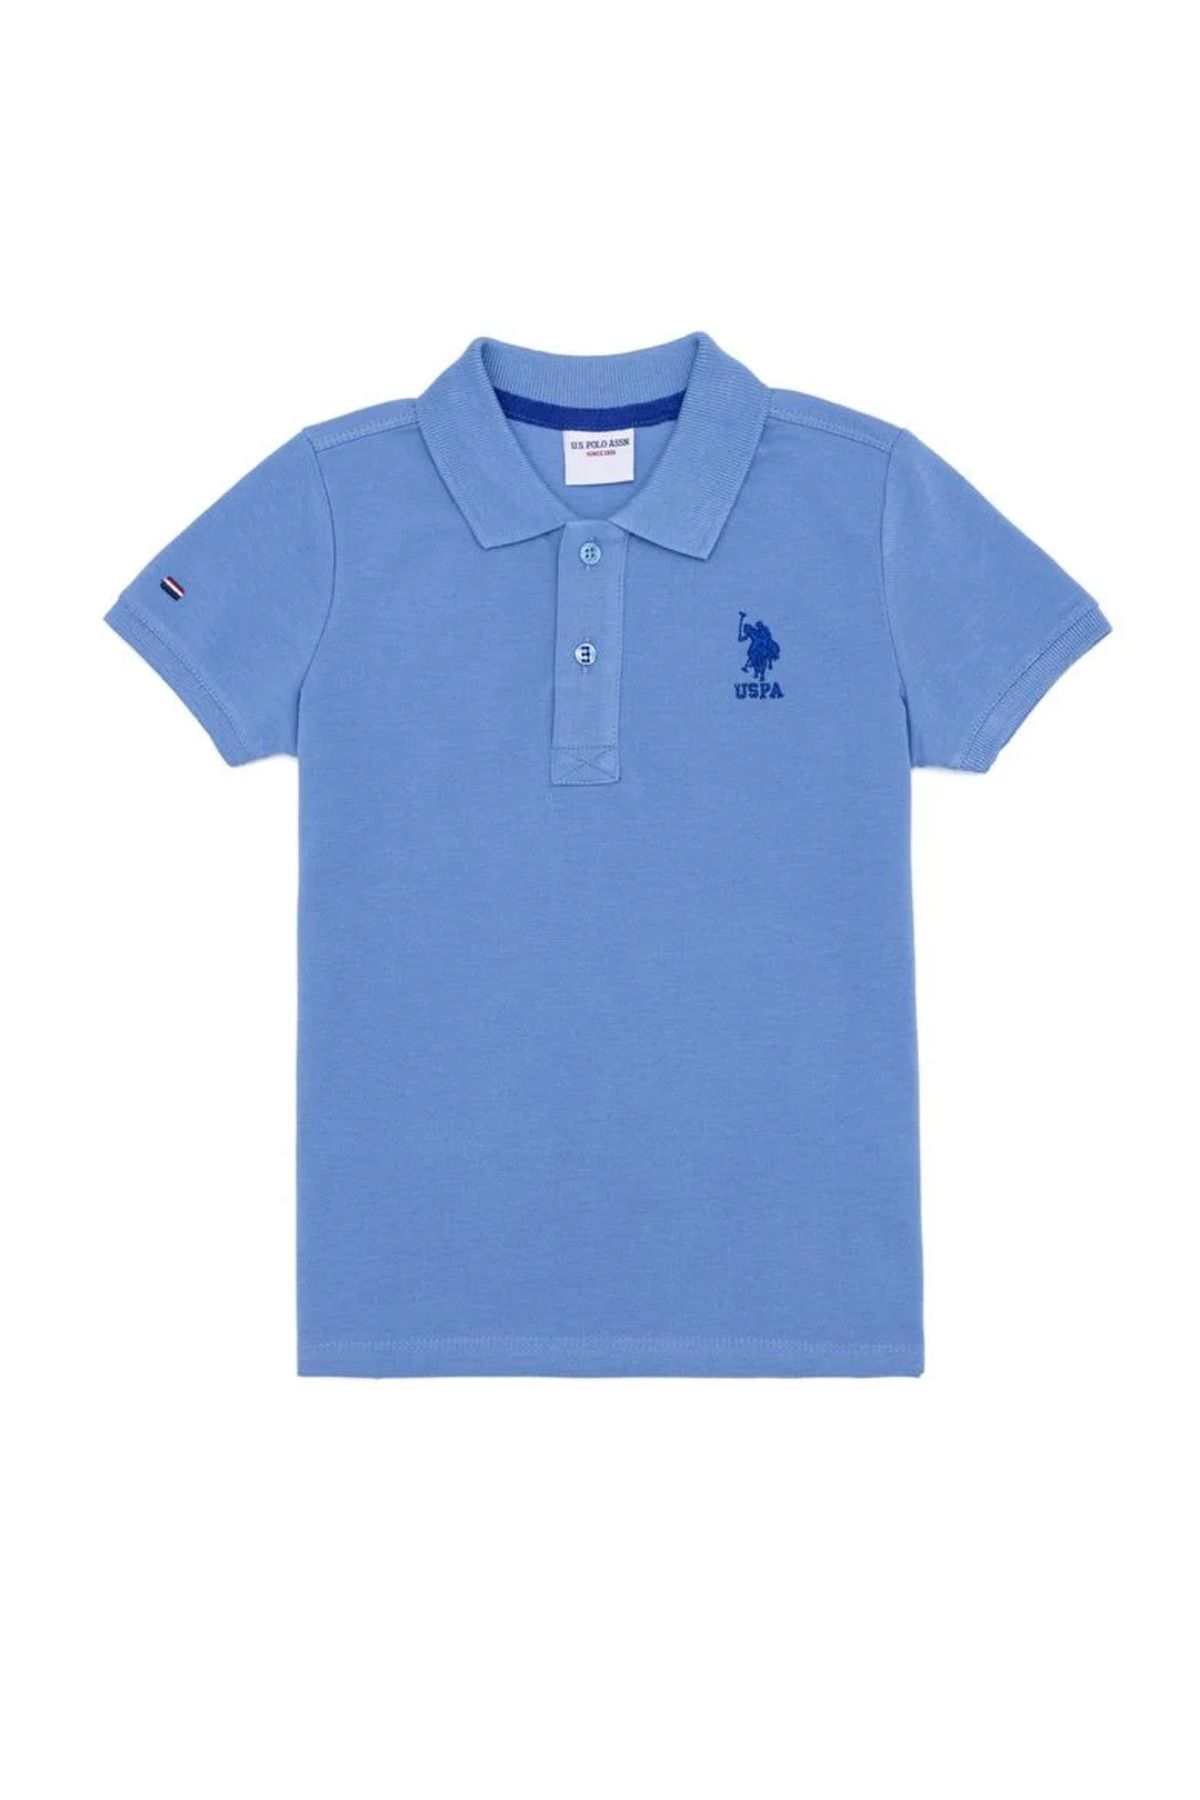 U.S. Polo Assn. Erkek Çocuk Koyu Mavi Polo Yaka Tişört